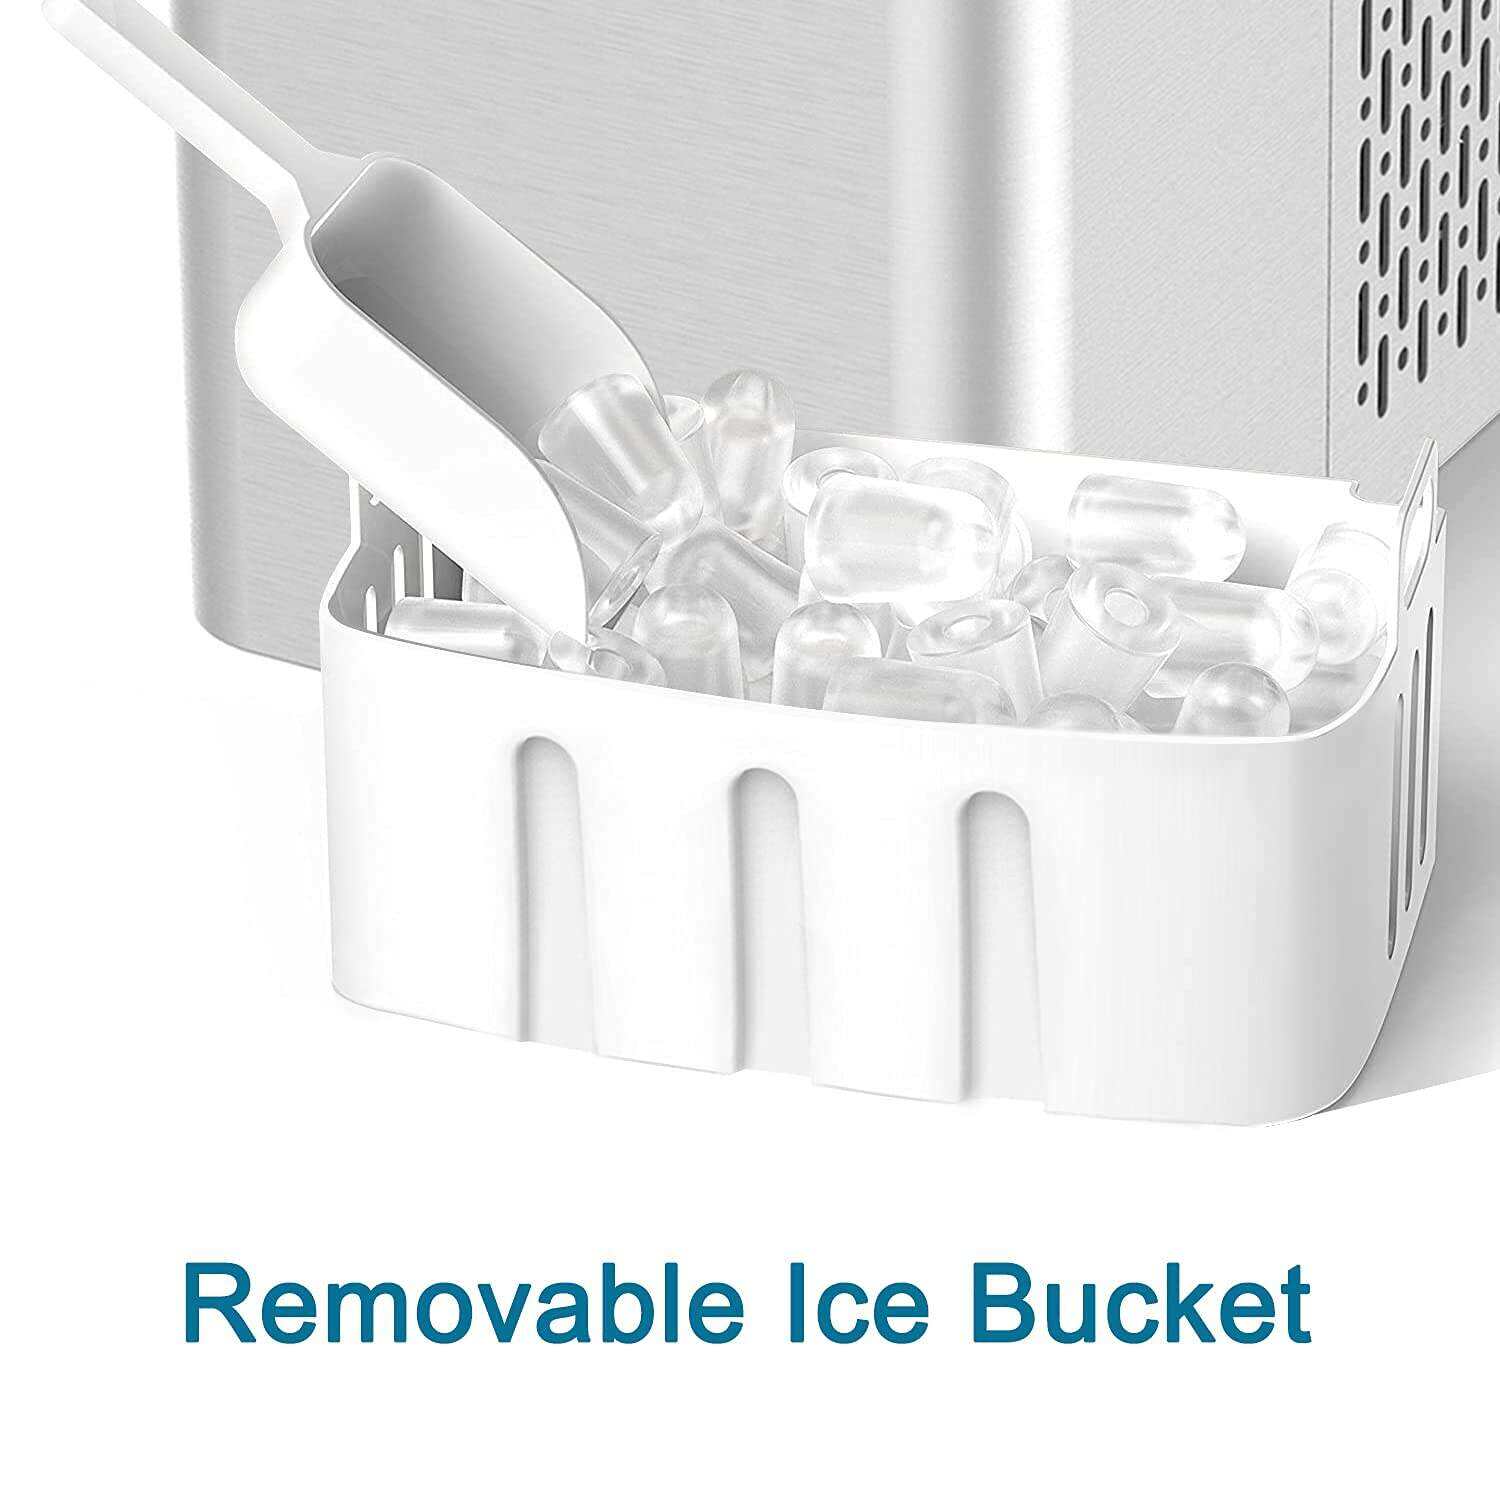 Encimera para hacer hielo. máquina portátil para hacer hielo de 27 libras en 24 horas. 9 cubitos de hielo listos en 5-7 minutos. máquina para hacer hielo con función de autolimpieza con cuchara de hielo y cesta